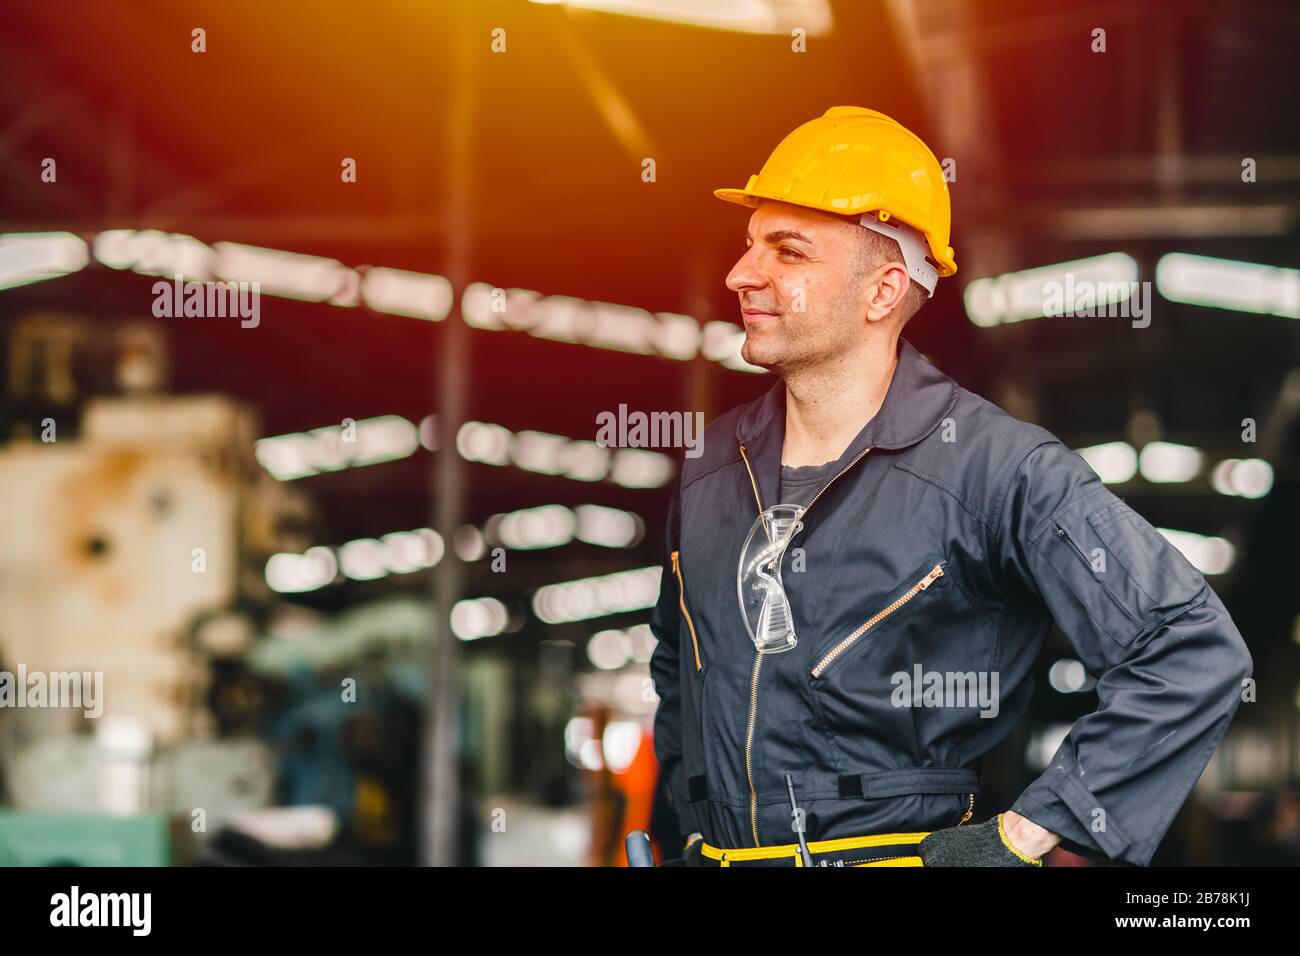 Fröhlicher Arbeiter, Portrait lächelt gutaussehend Arbeit mit Sicherheitsanzug Werkzeuge Gürtel und Funkdienst Mann in der Fabrik. Stockfoto